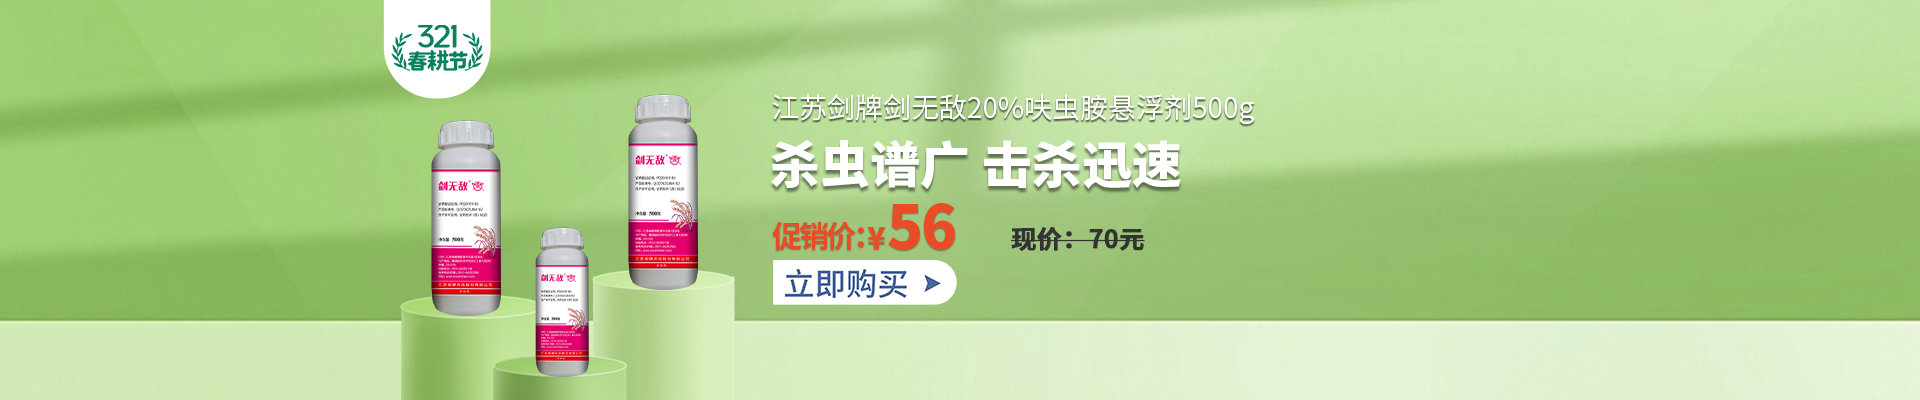 【3月】众筹-江苏剑牌剑无敌20%呋虫胺悬浮剂500g